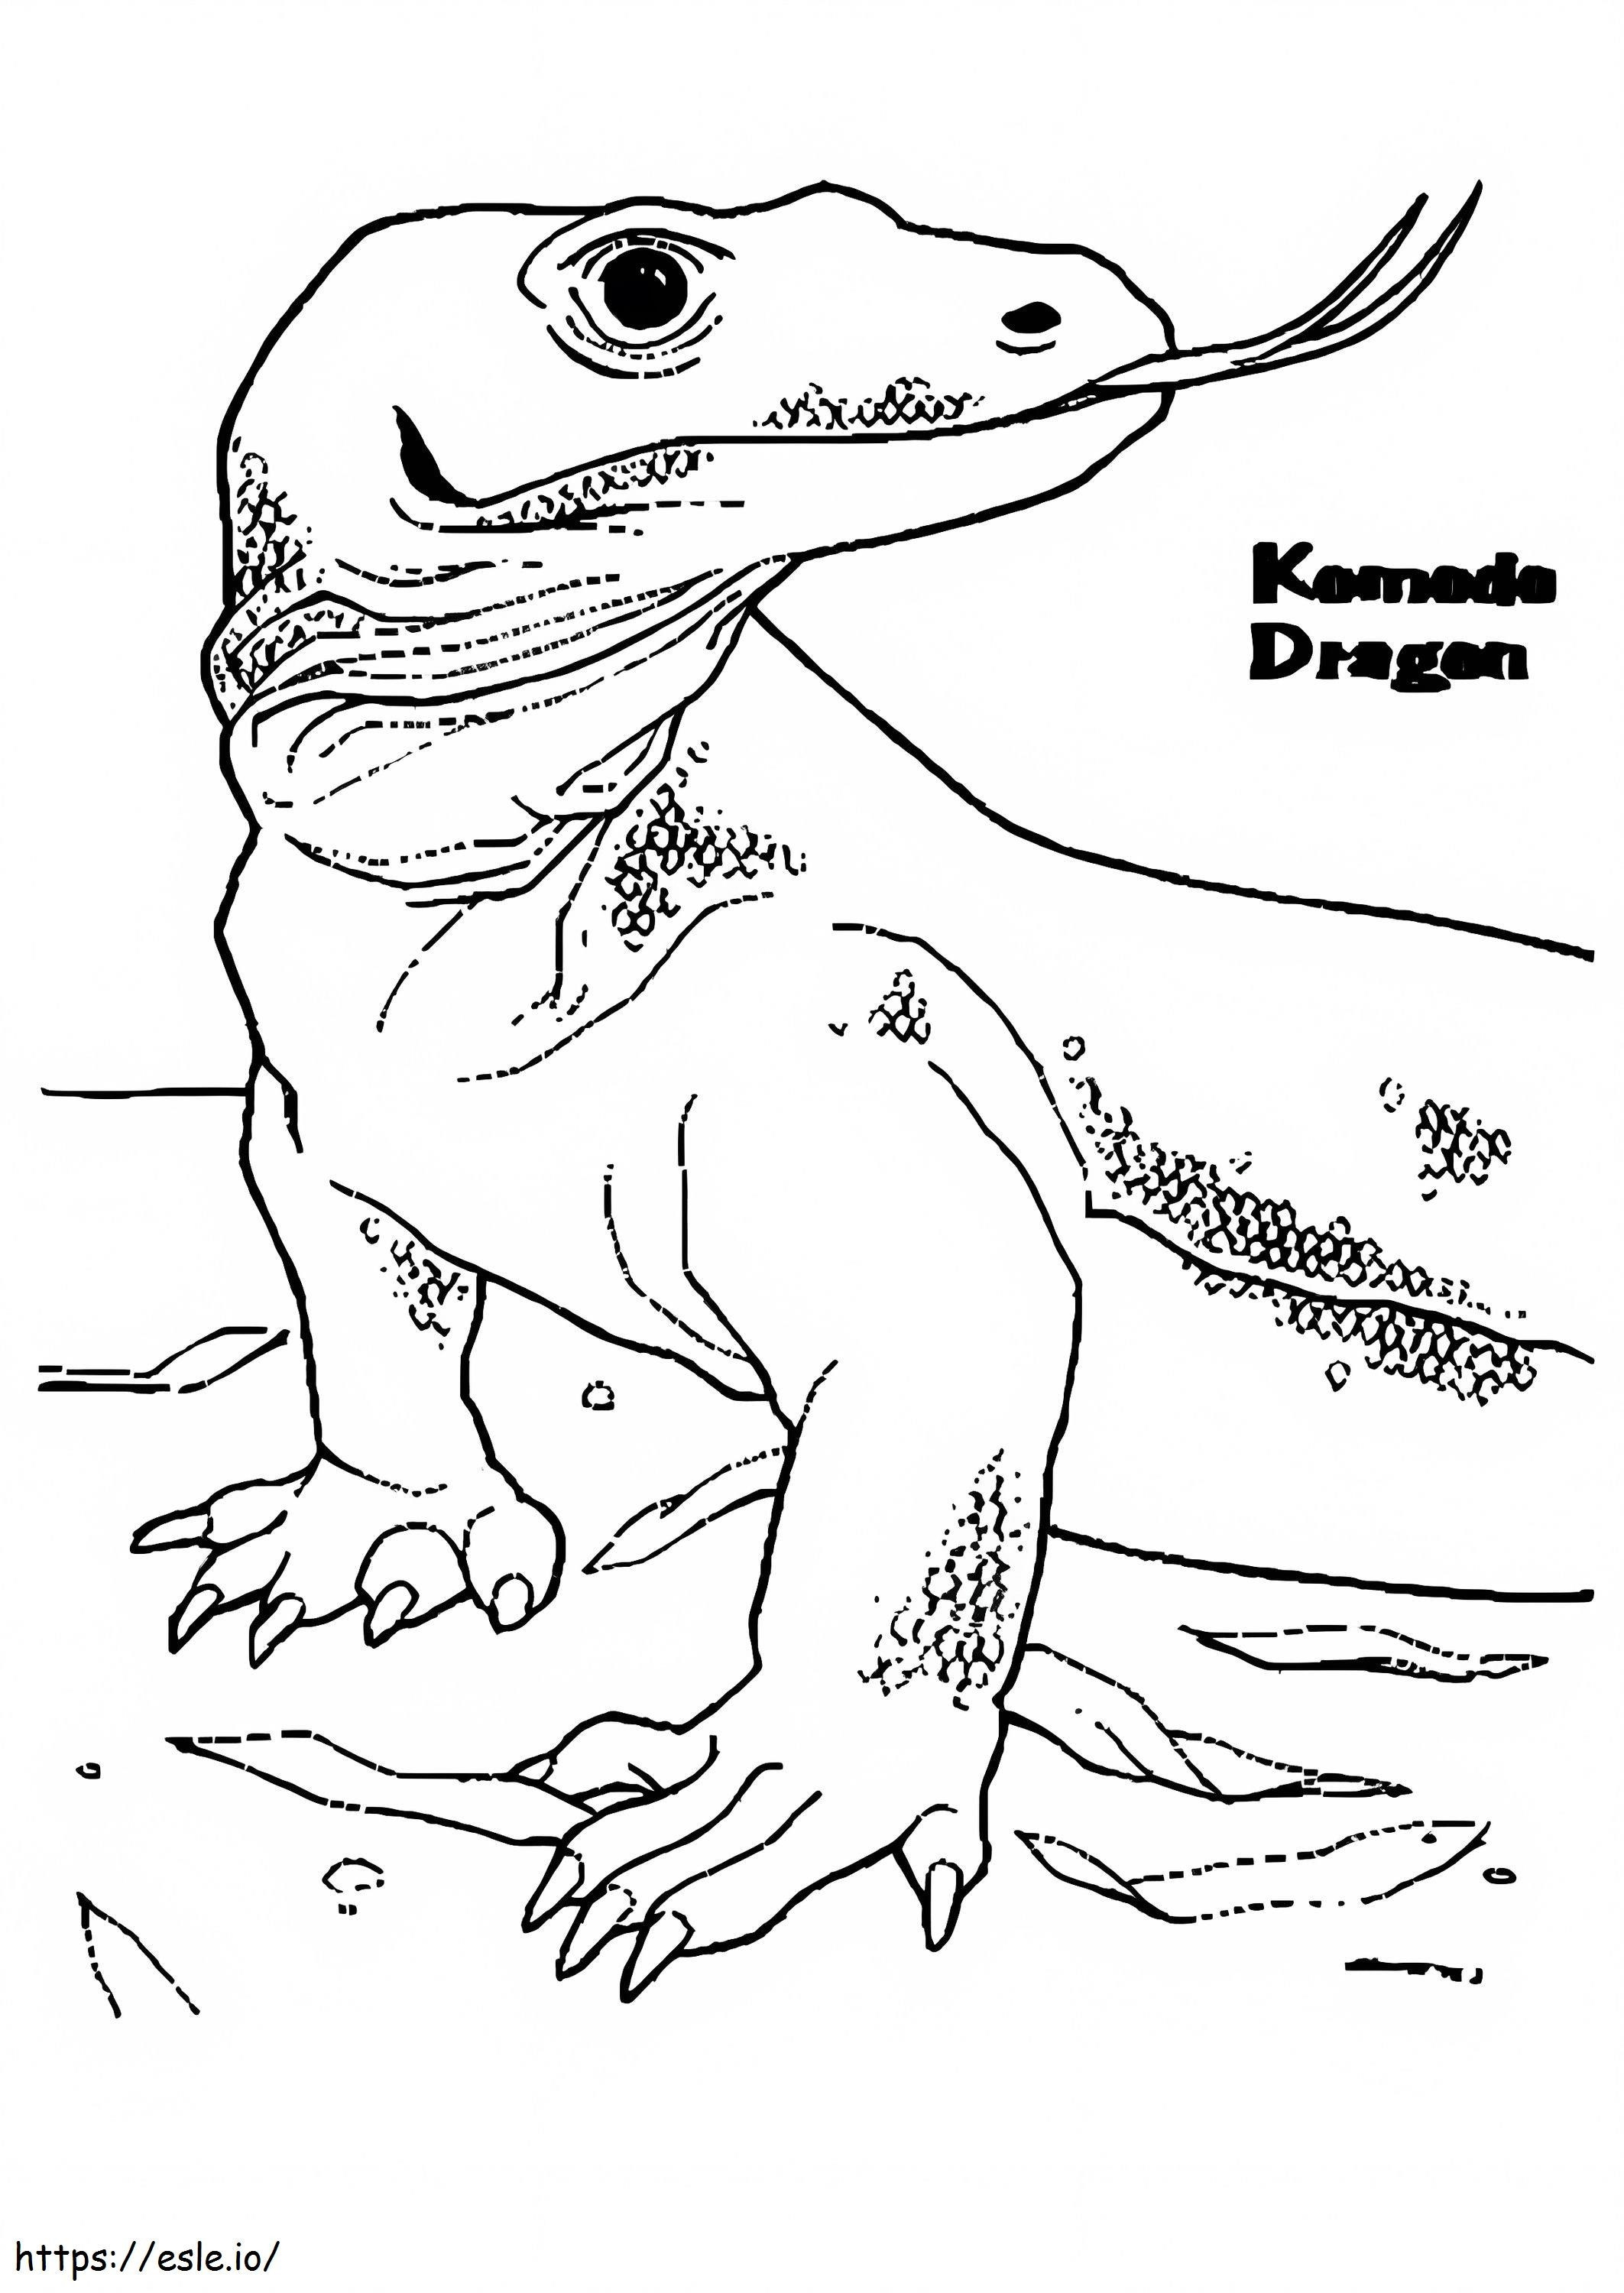 Komodo Dragon 3 coloring page